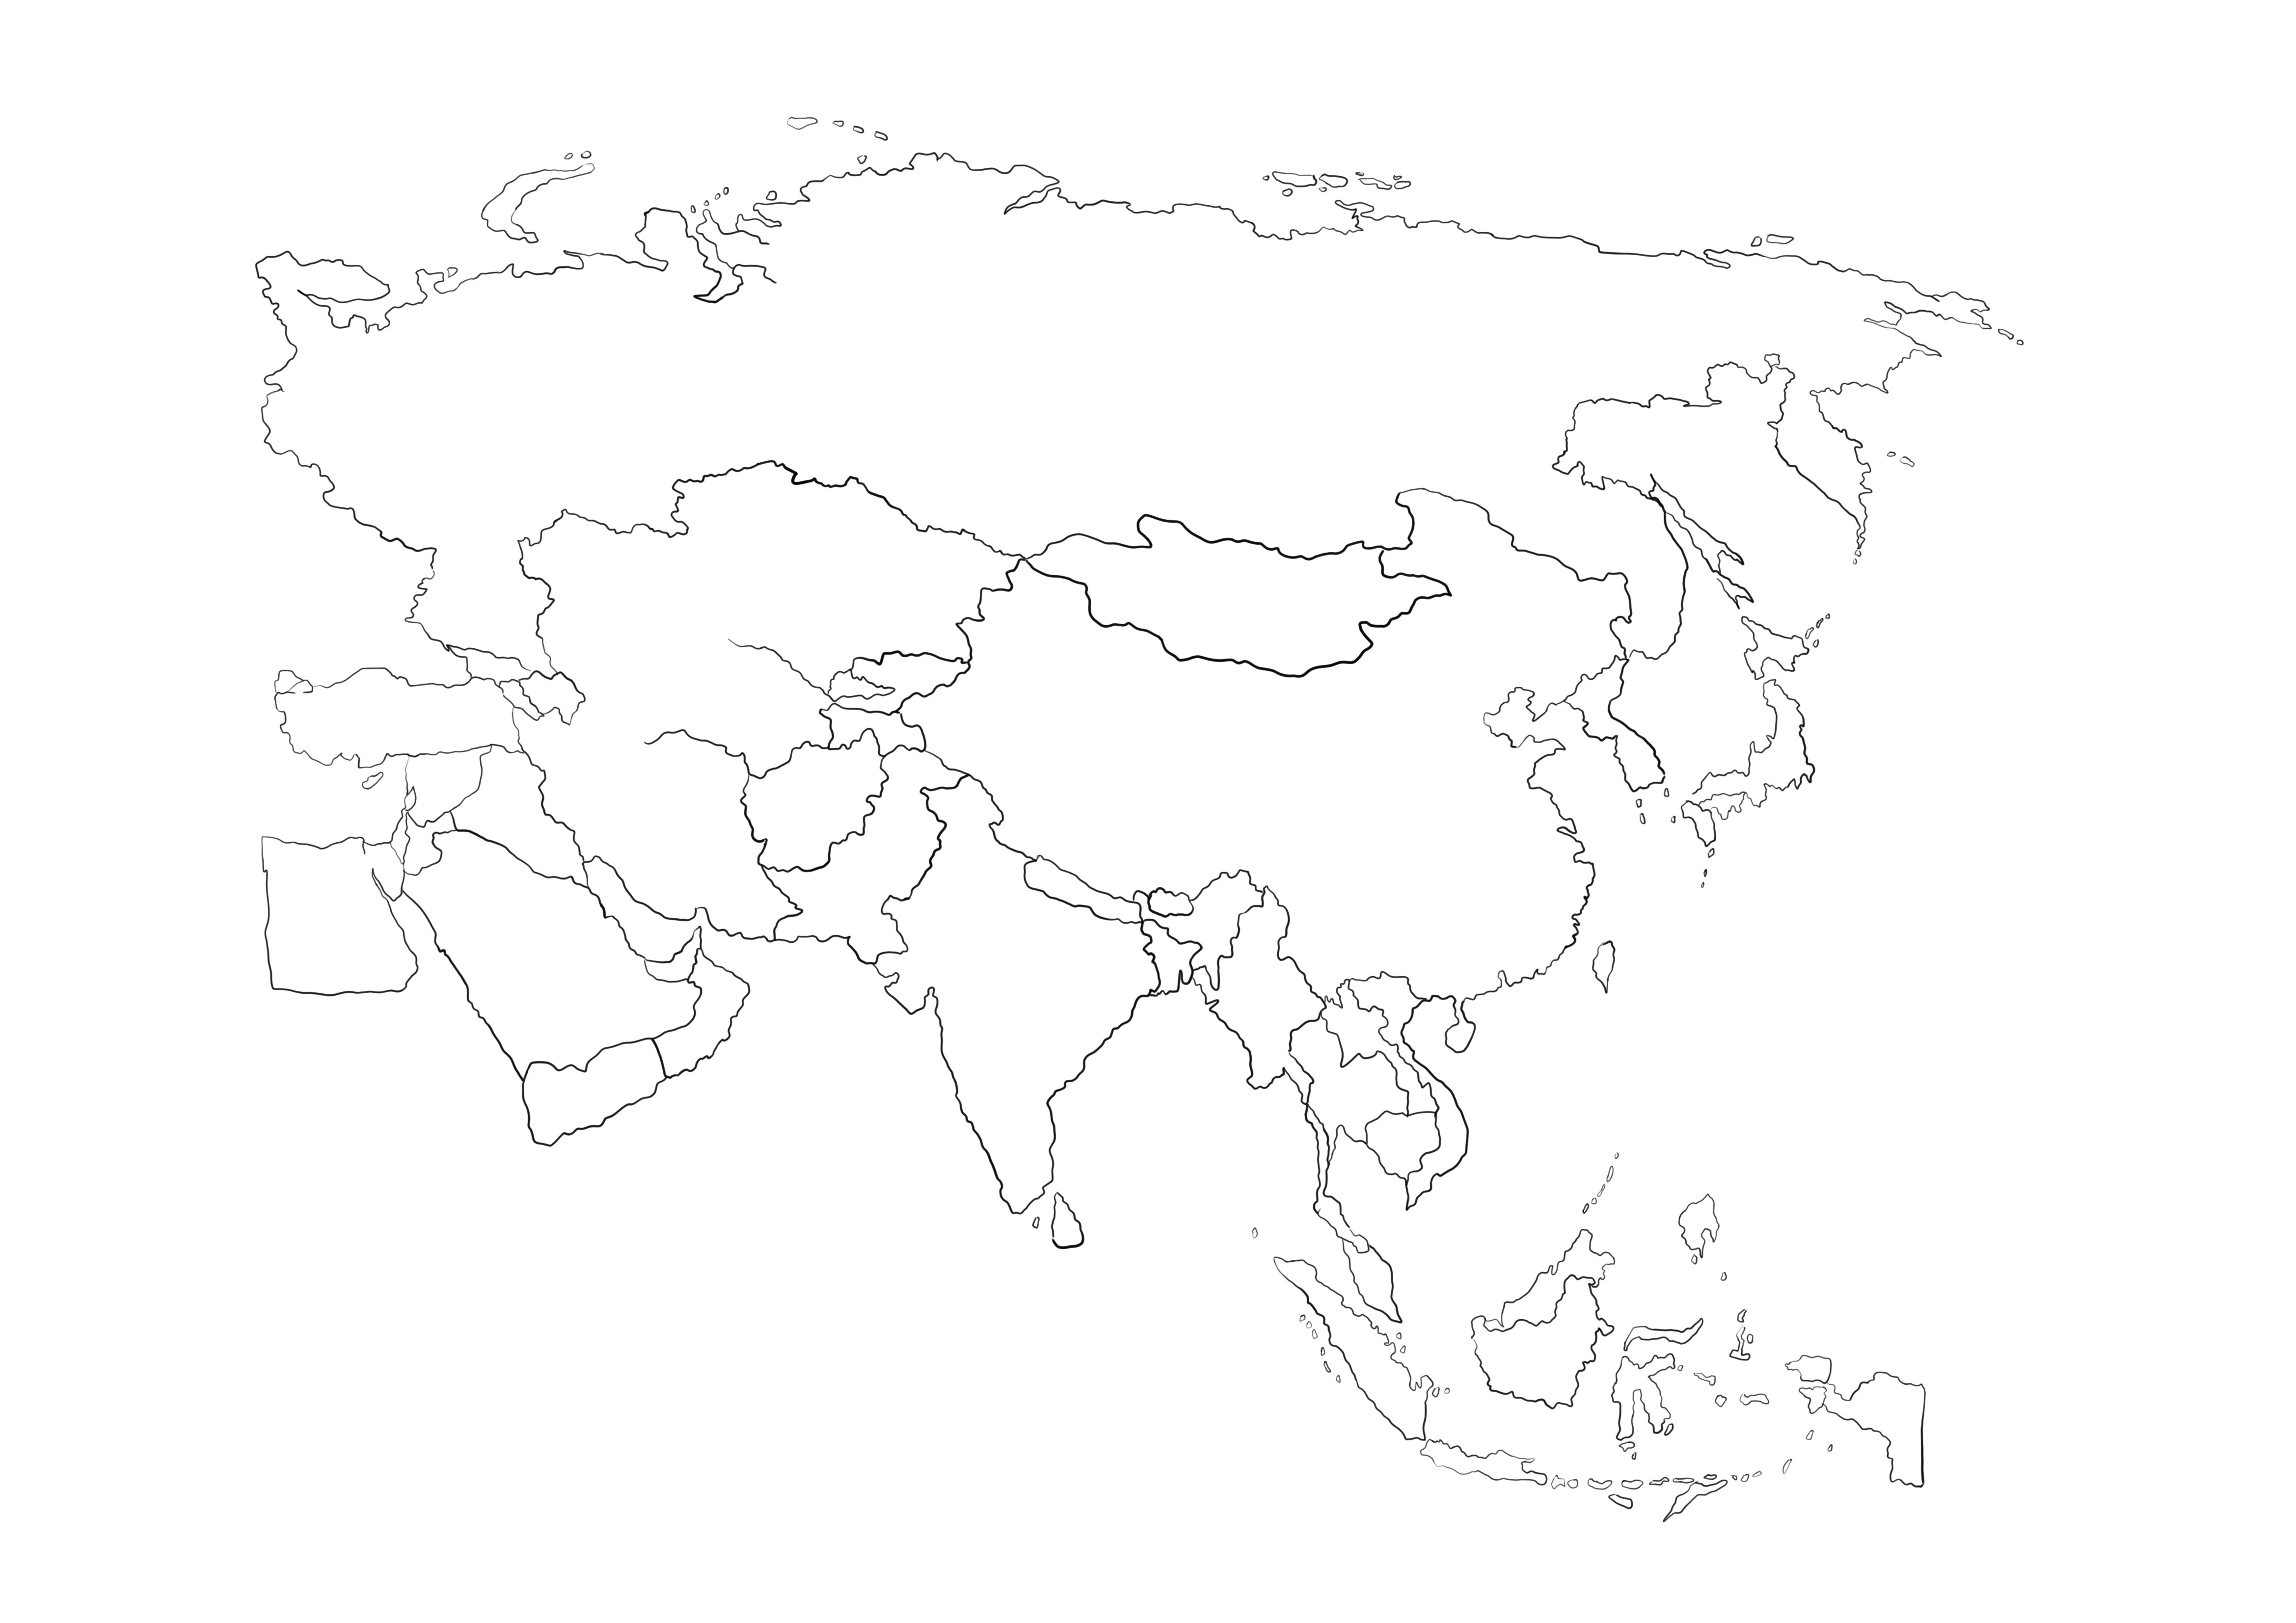 Immagine stampabile gratuita della mappa dell'Asia da colorare per i bambini